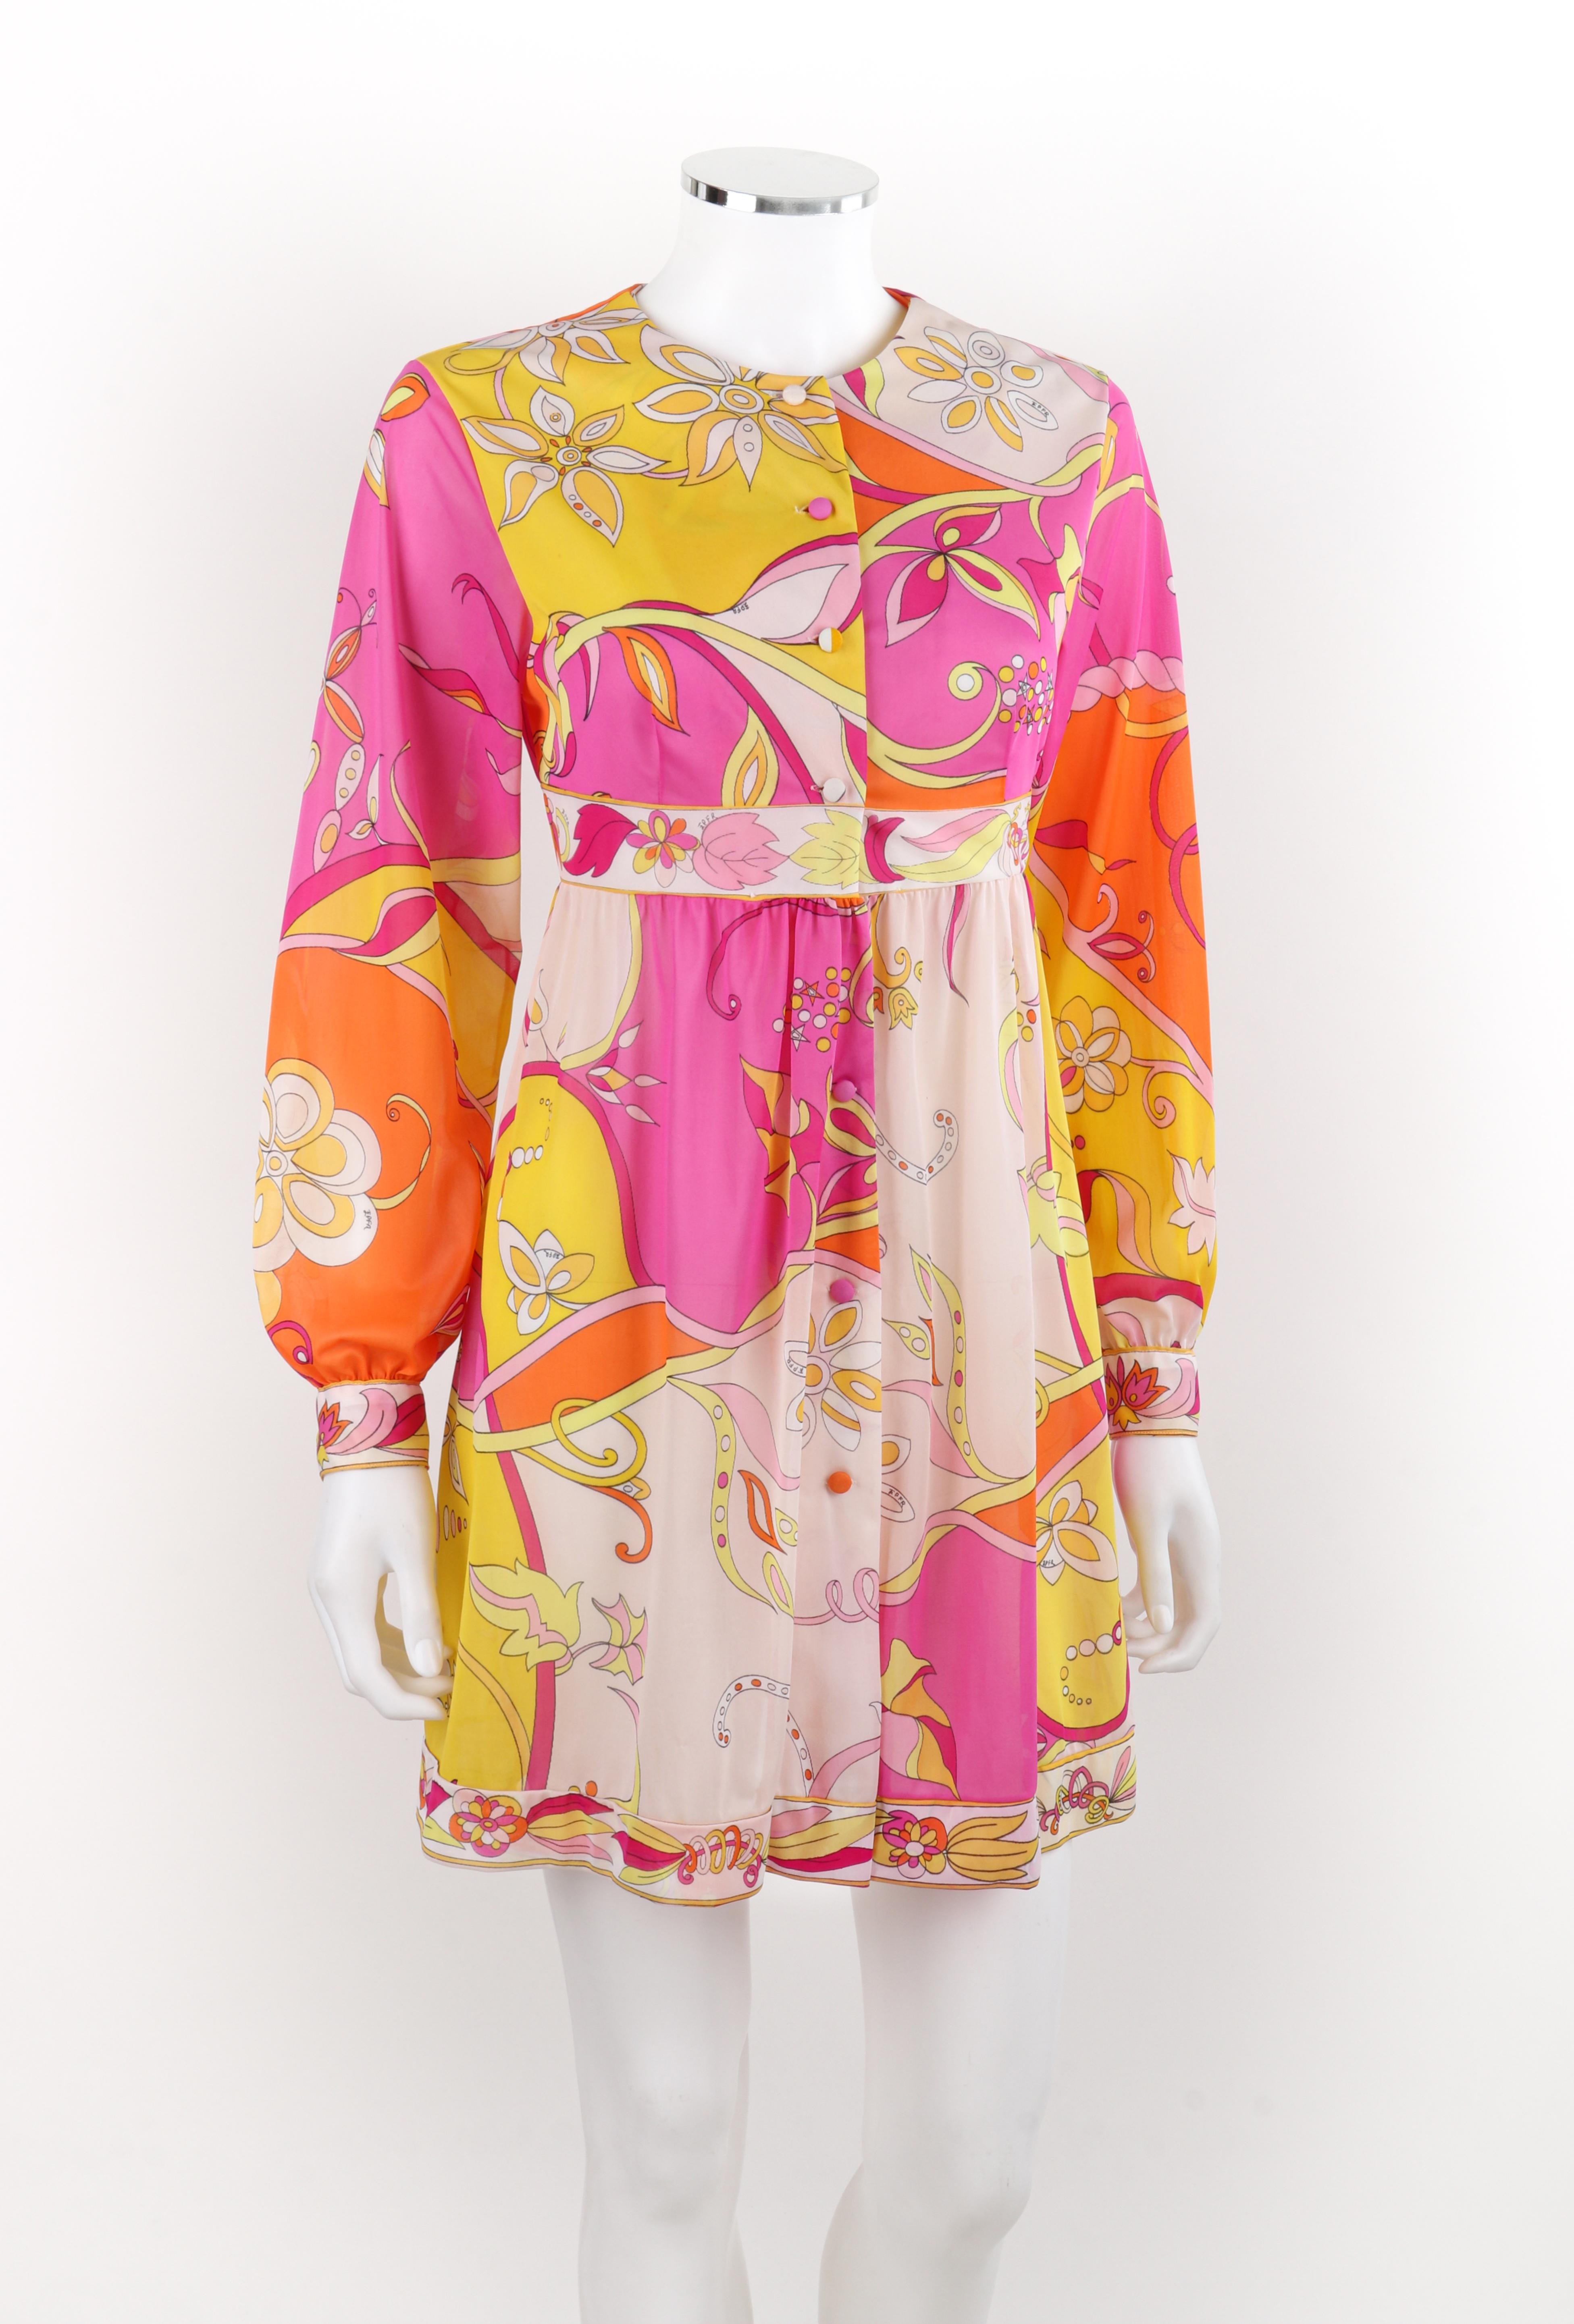 EMILIO PUCCI Robe babydoll boutonnée en soie multicolore à motifs floraux, années 1970  Pour femmes en vente